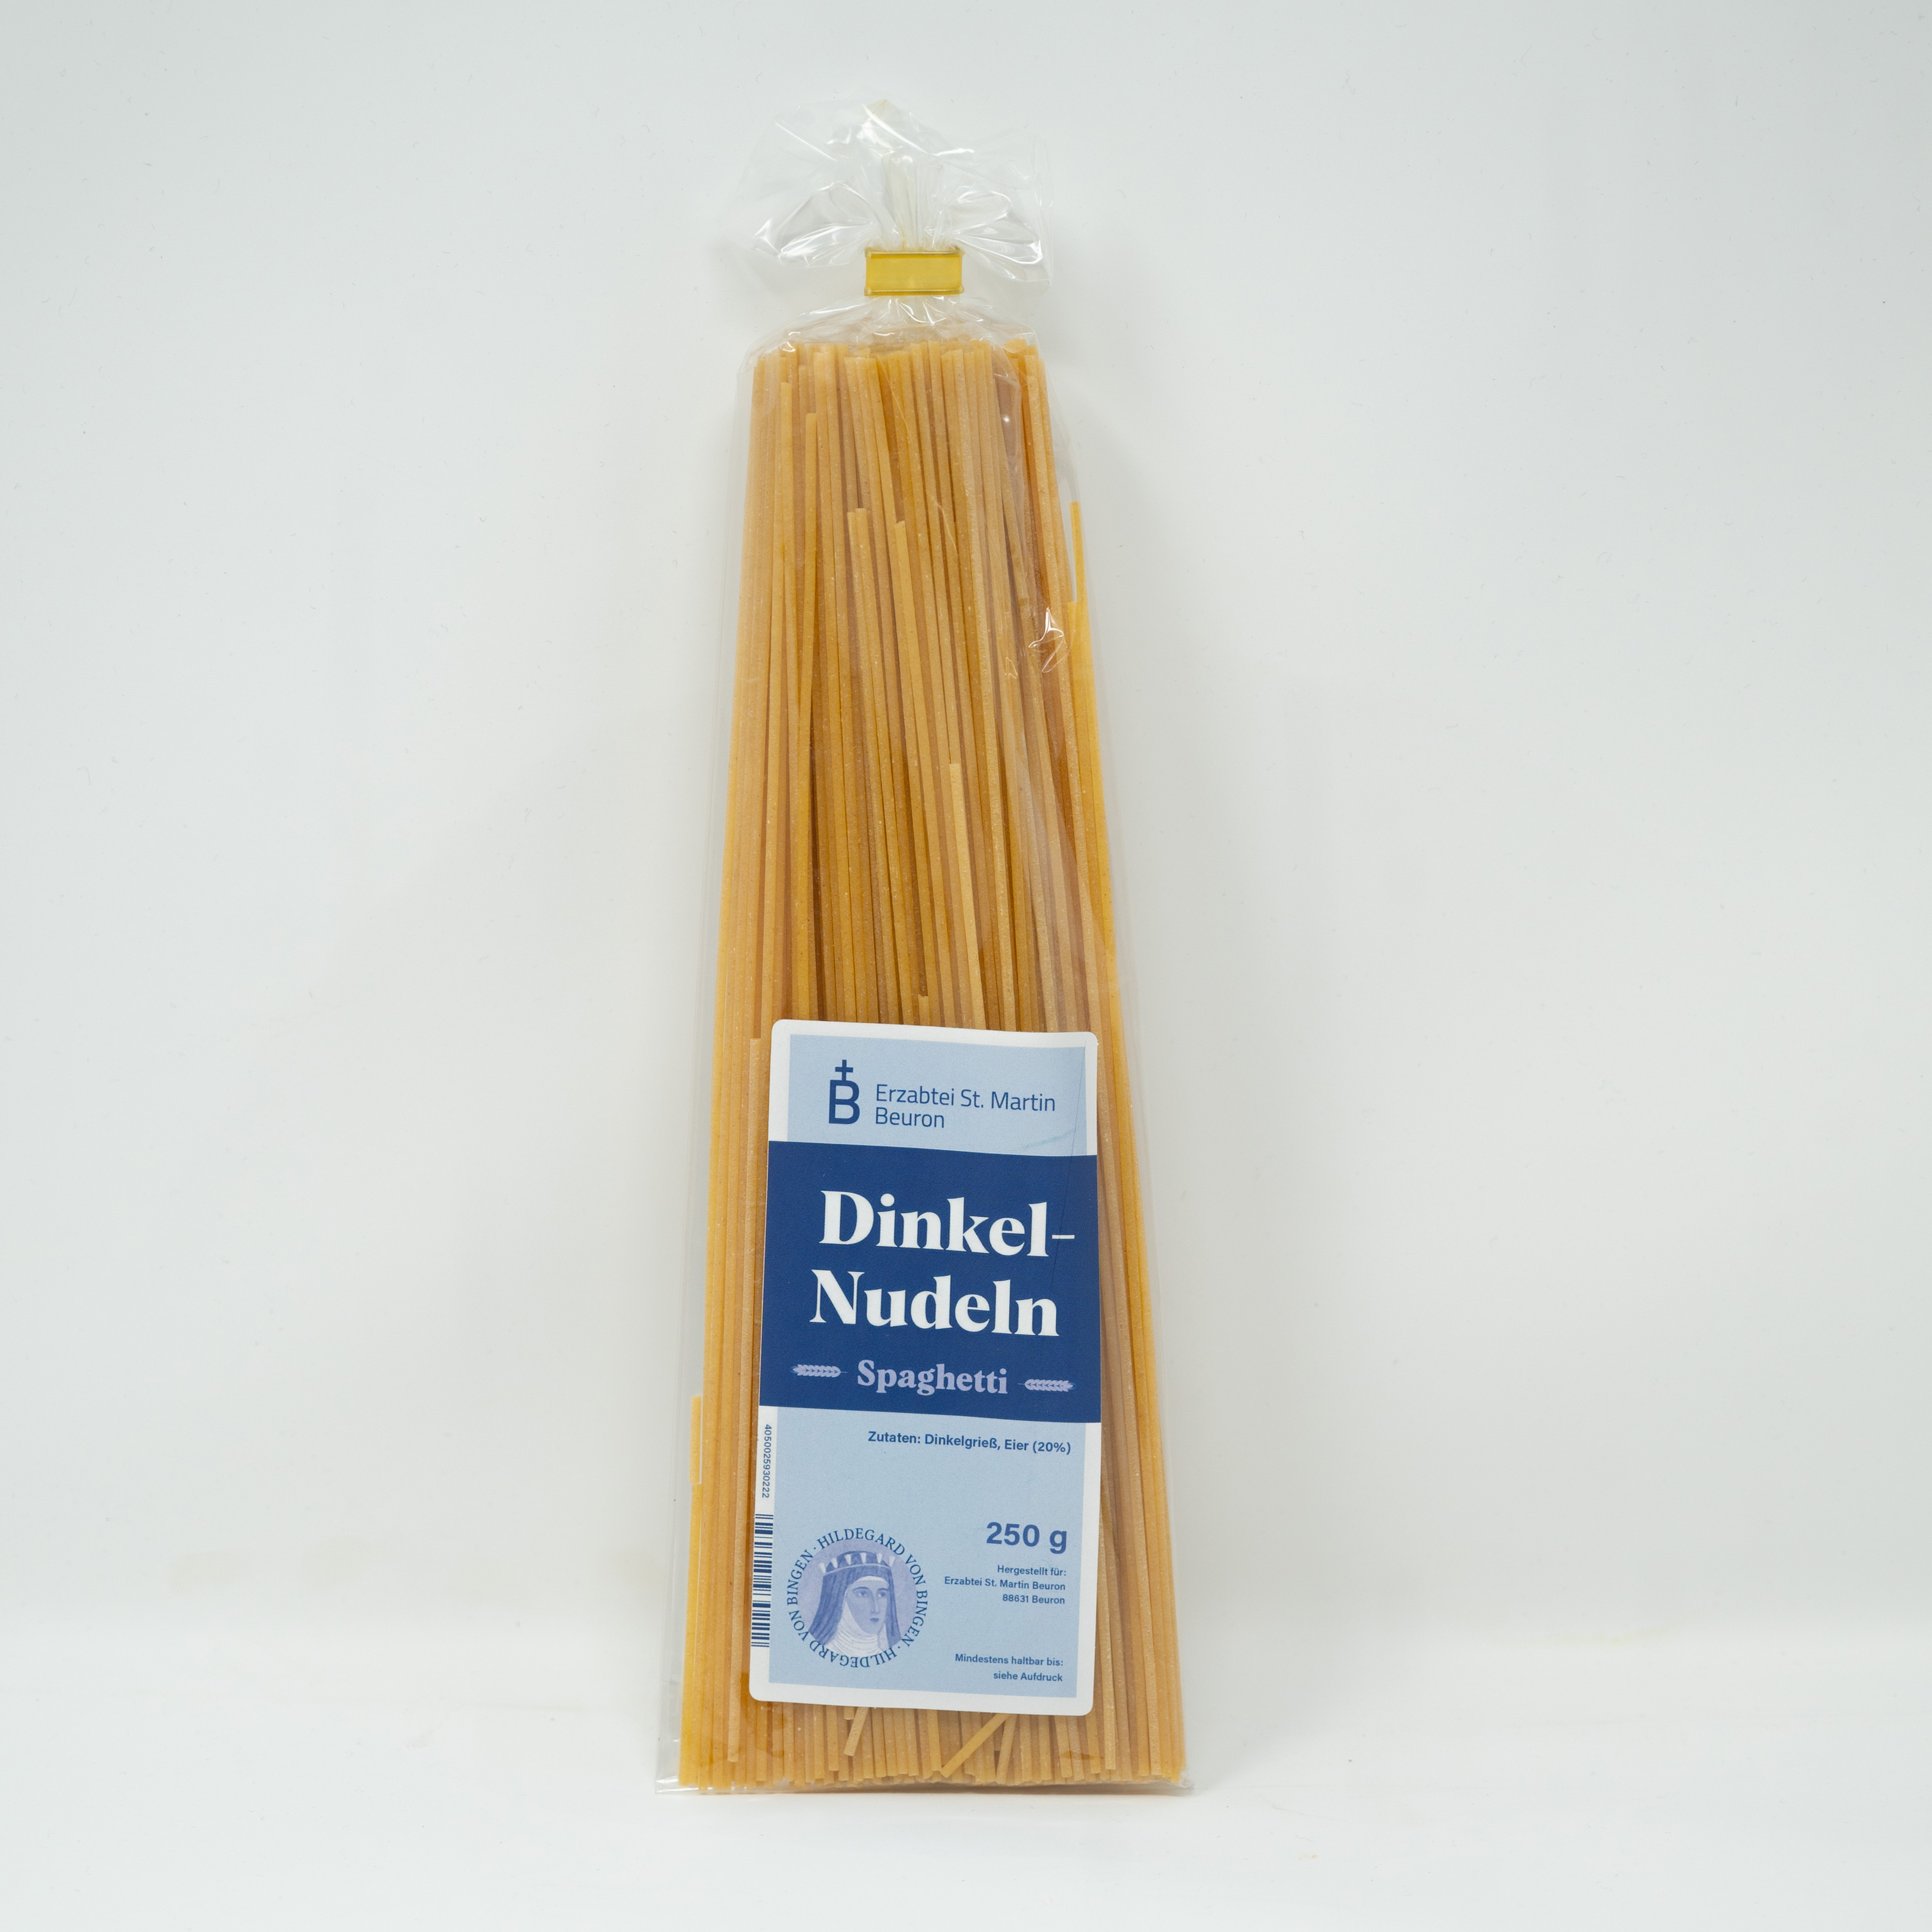 Dinkel-Nudeln "Spaghetti"